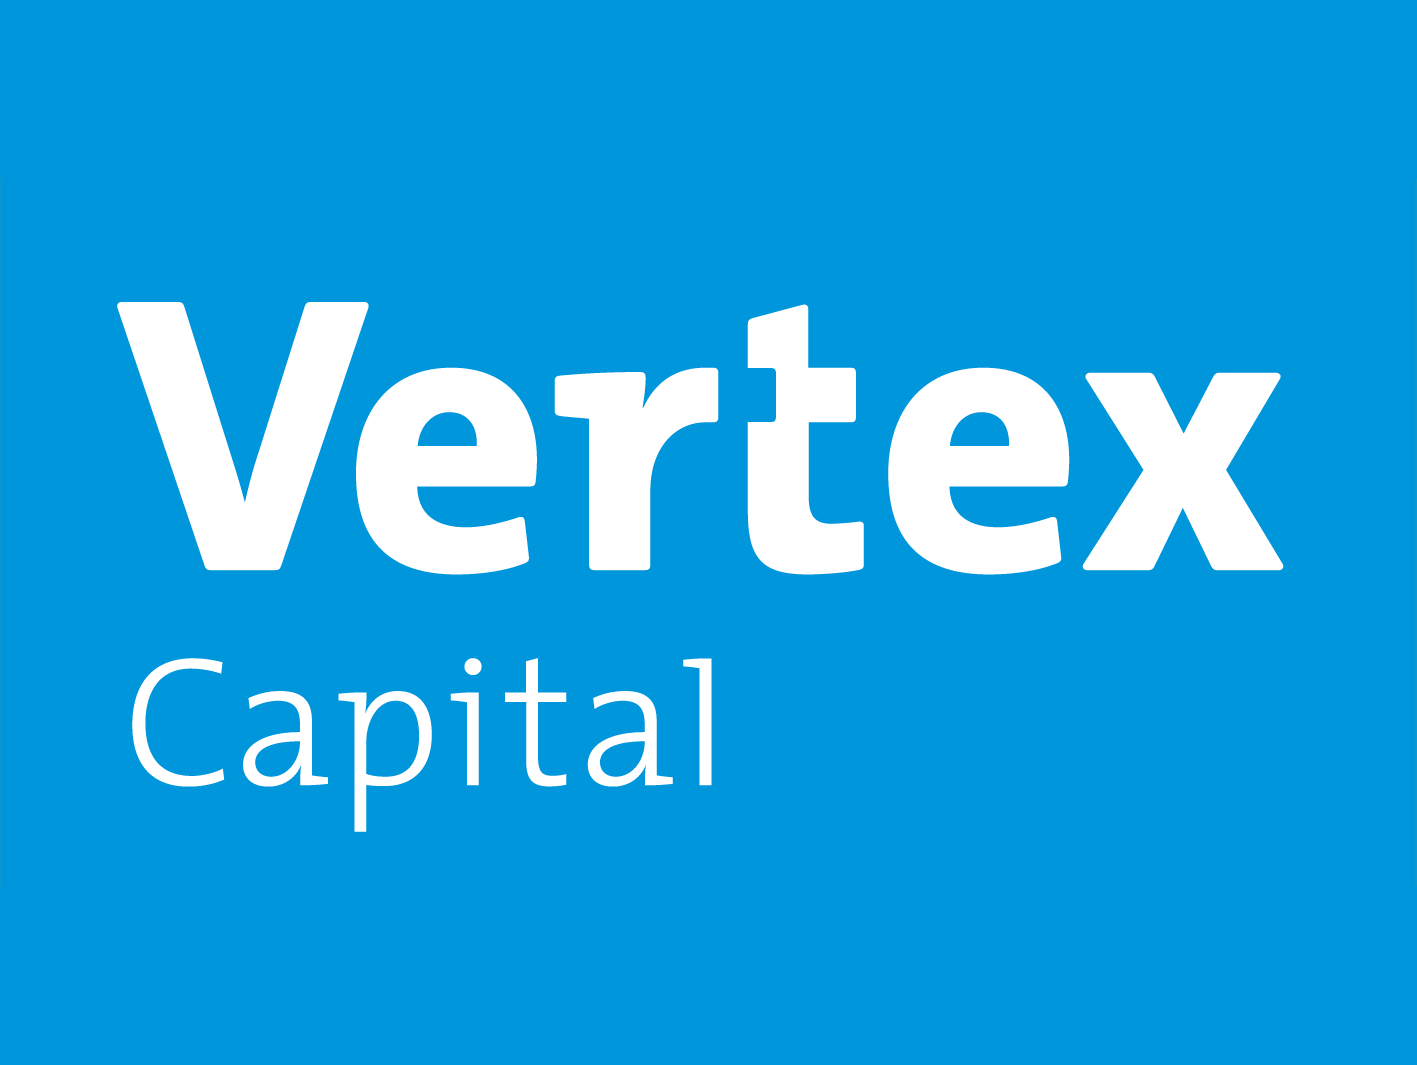 Разработка логотипа и стиля для компании Vertex Capital. Разработана форма логотипа, стиль и цветовая гамма